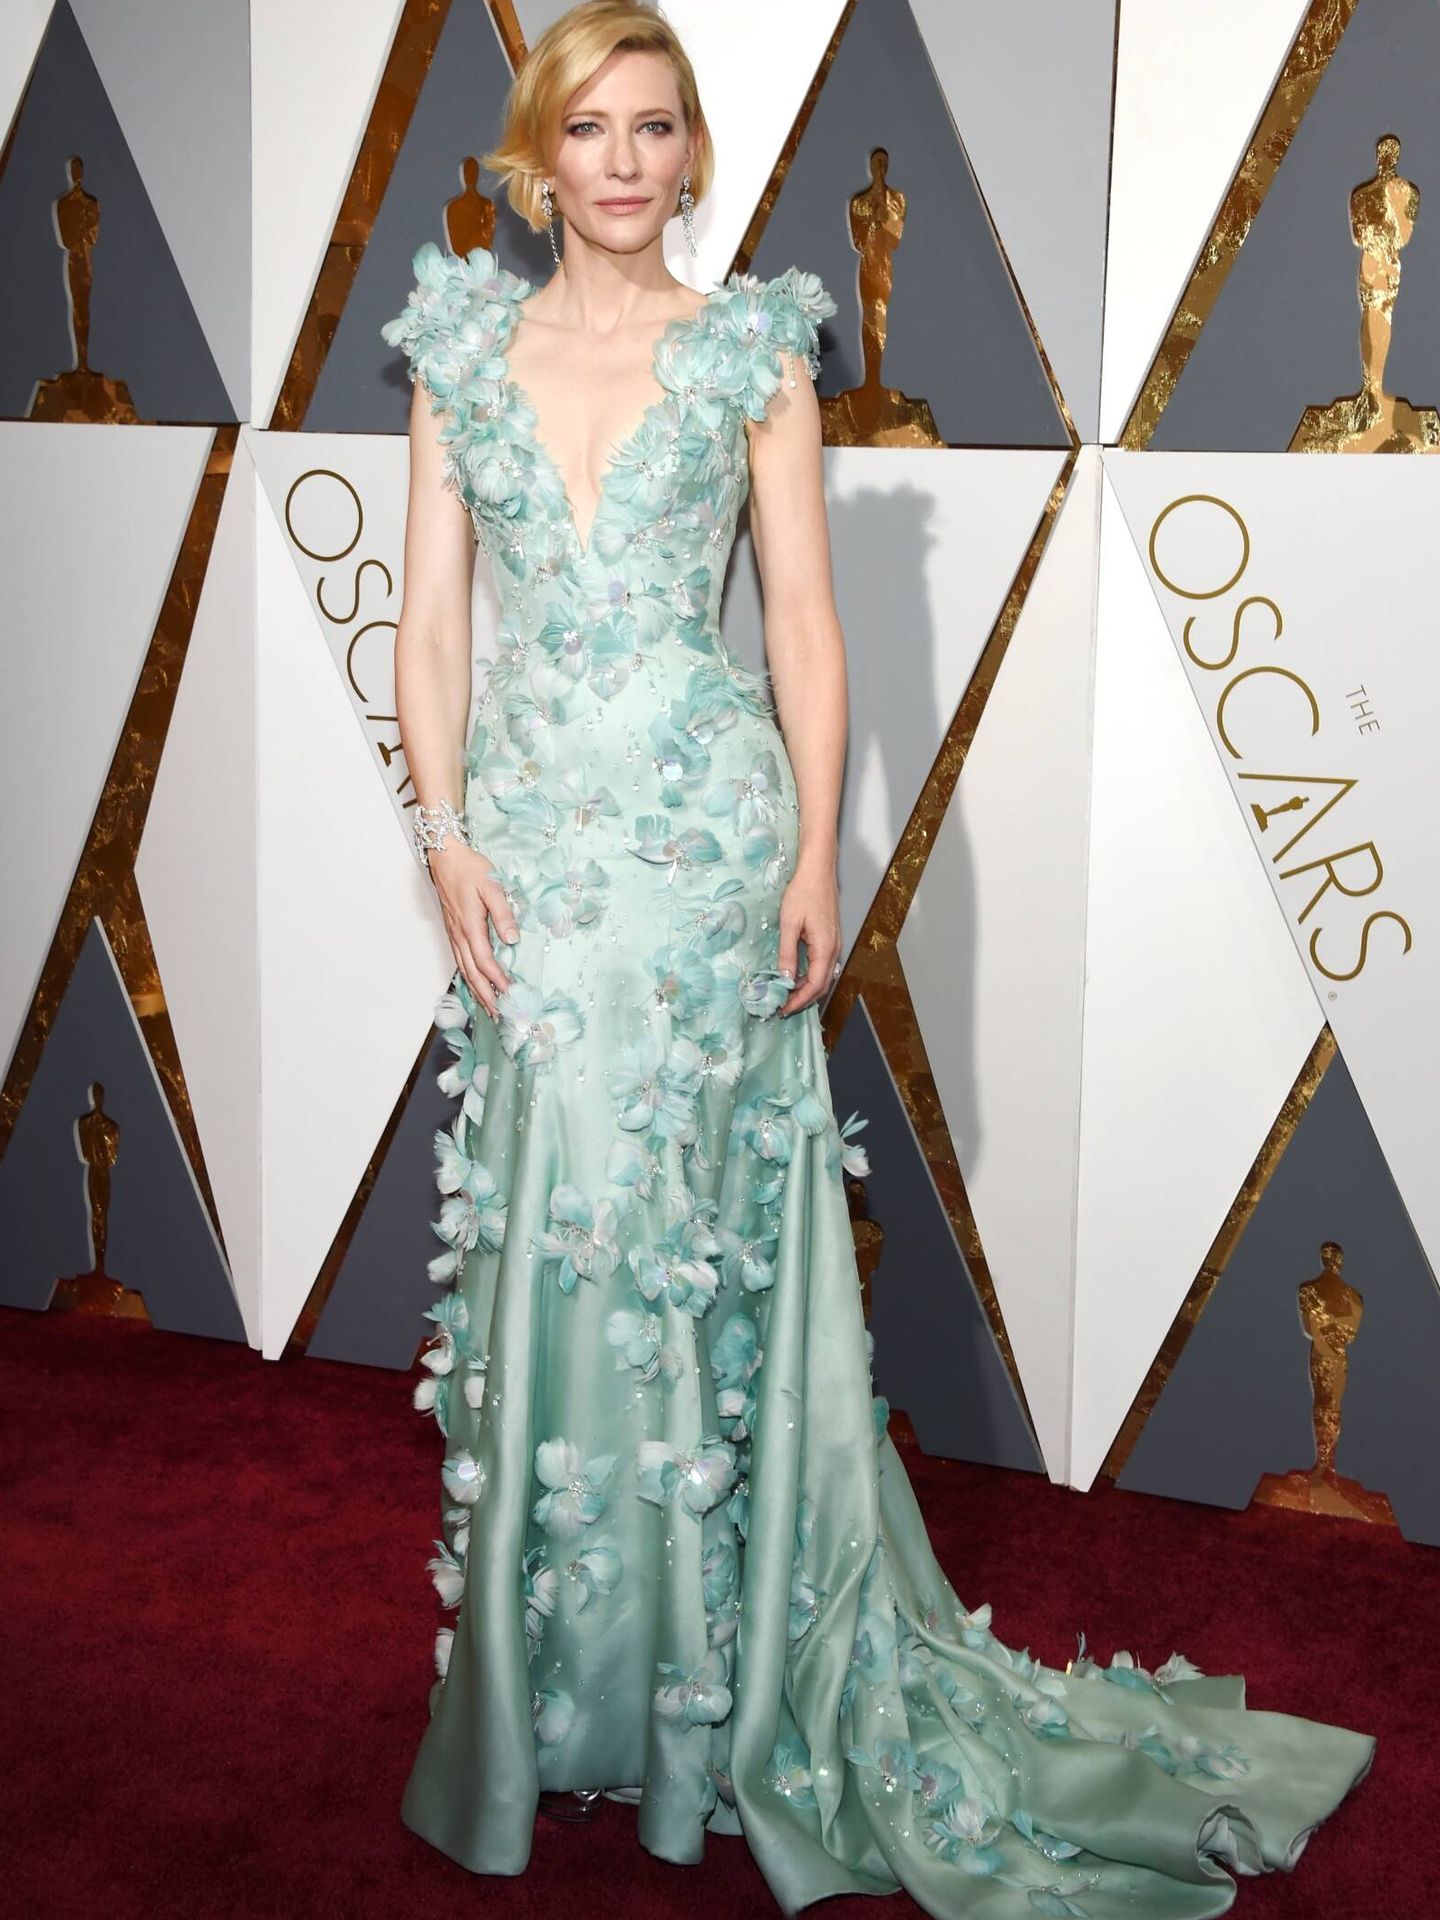  Cate Blanchett, en los Premios Oscar de 2016. (Getty)